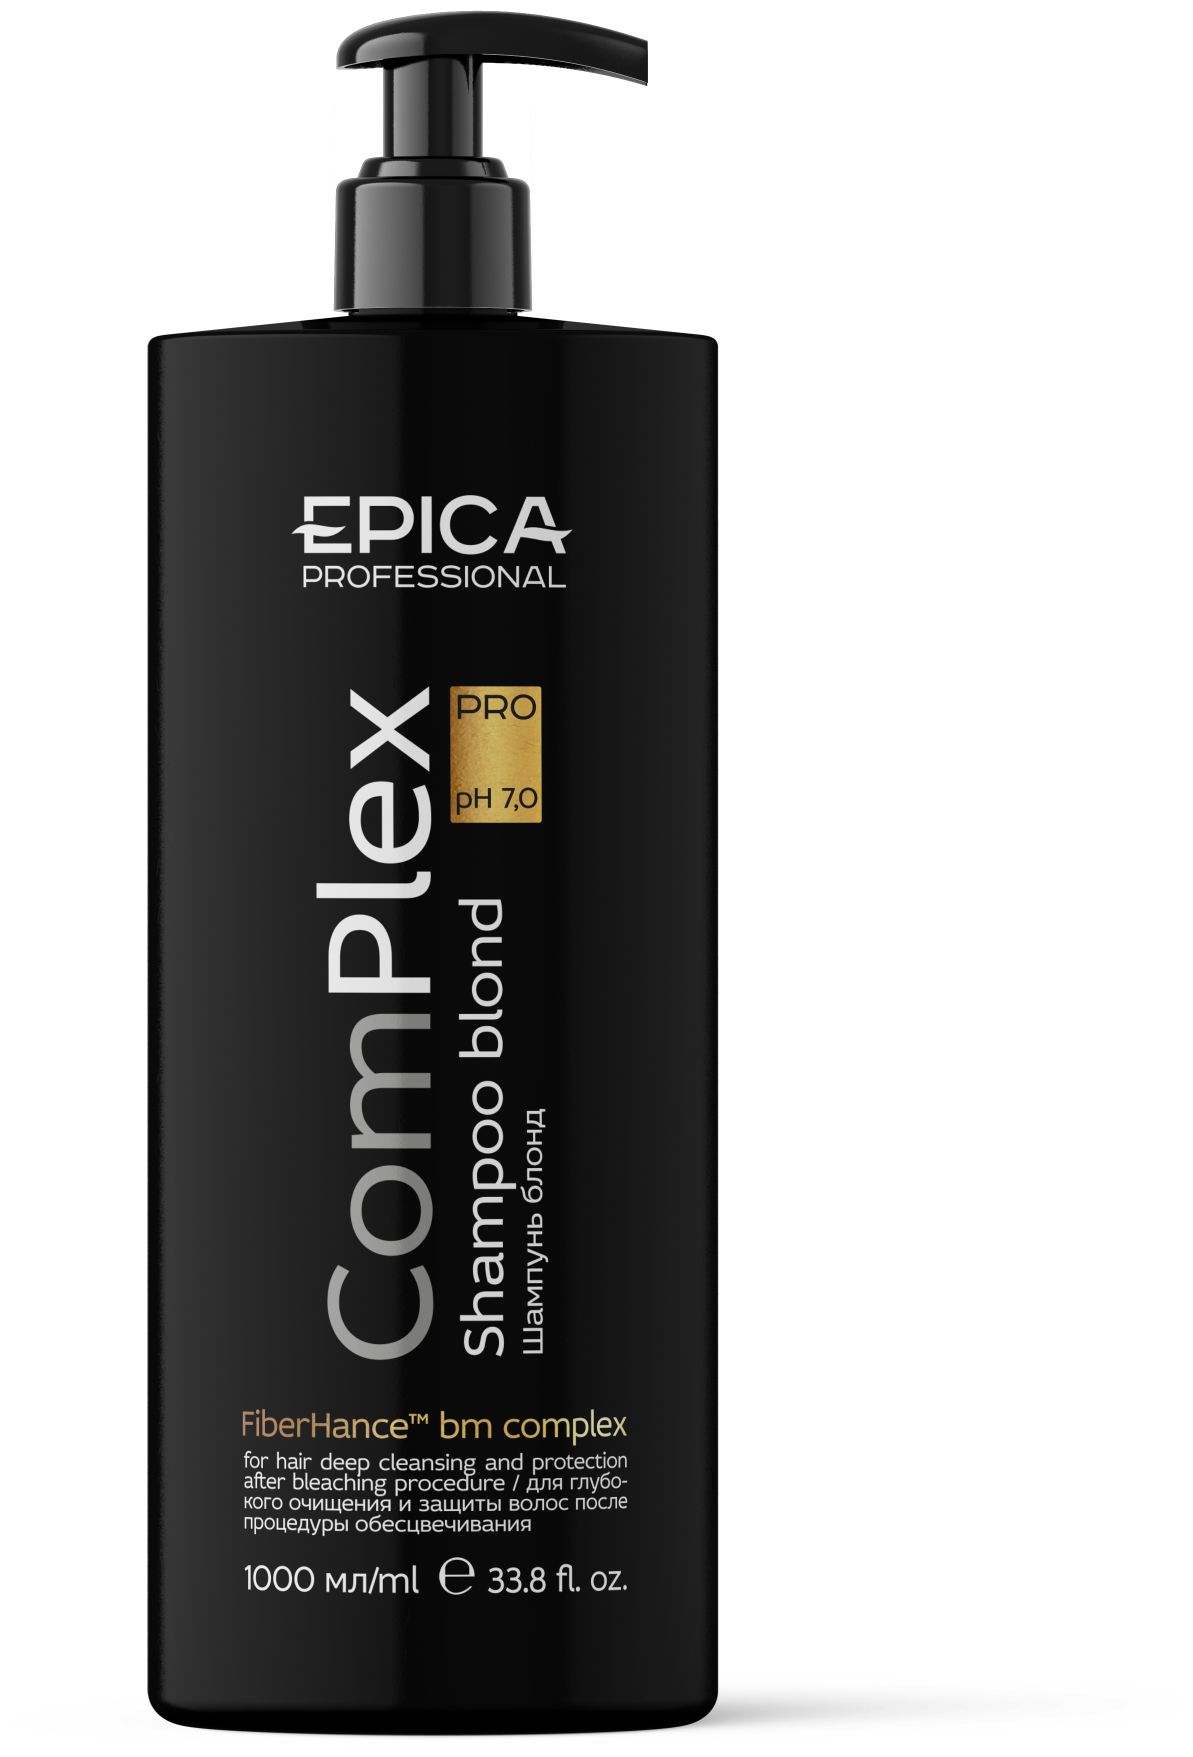 EPICA PROFESSIONAL ComPlex Pro Шампунь для глубокого очищения и защиты волос после процедуры обесцвечивания, 1000 мл